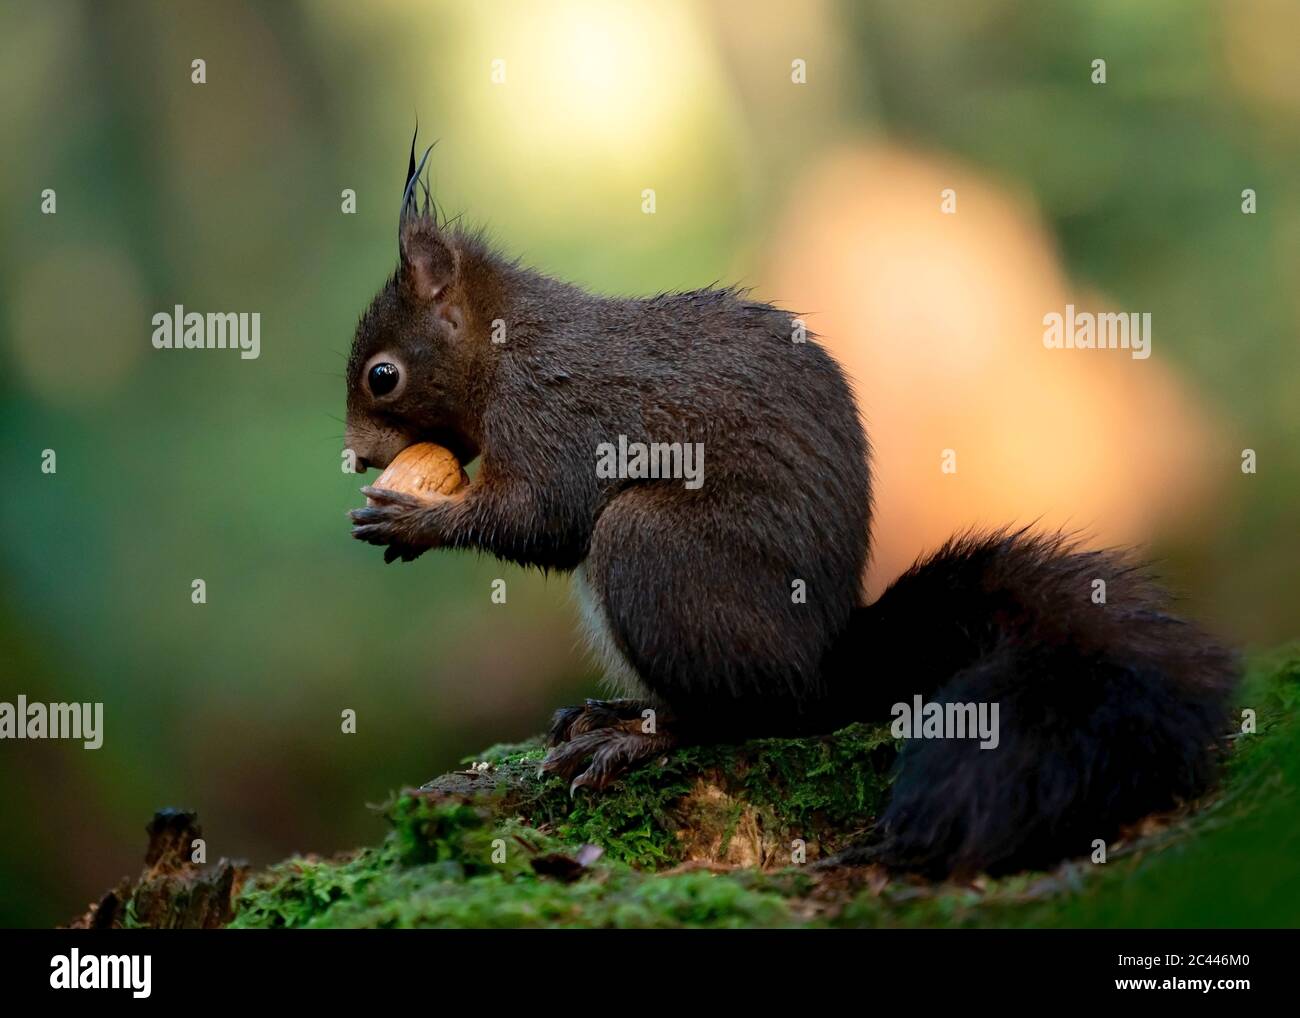 Portrait de l'écureuil brun foncé se nourrissant de l'écrou Banque D'Images